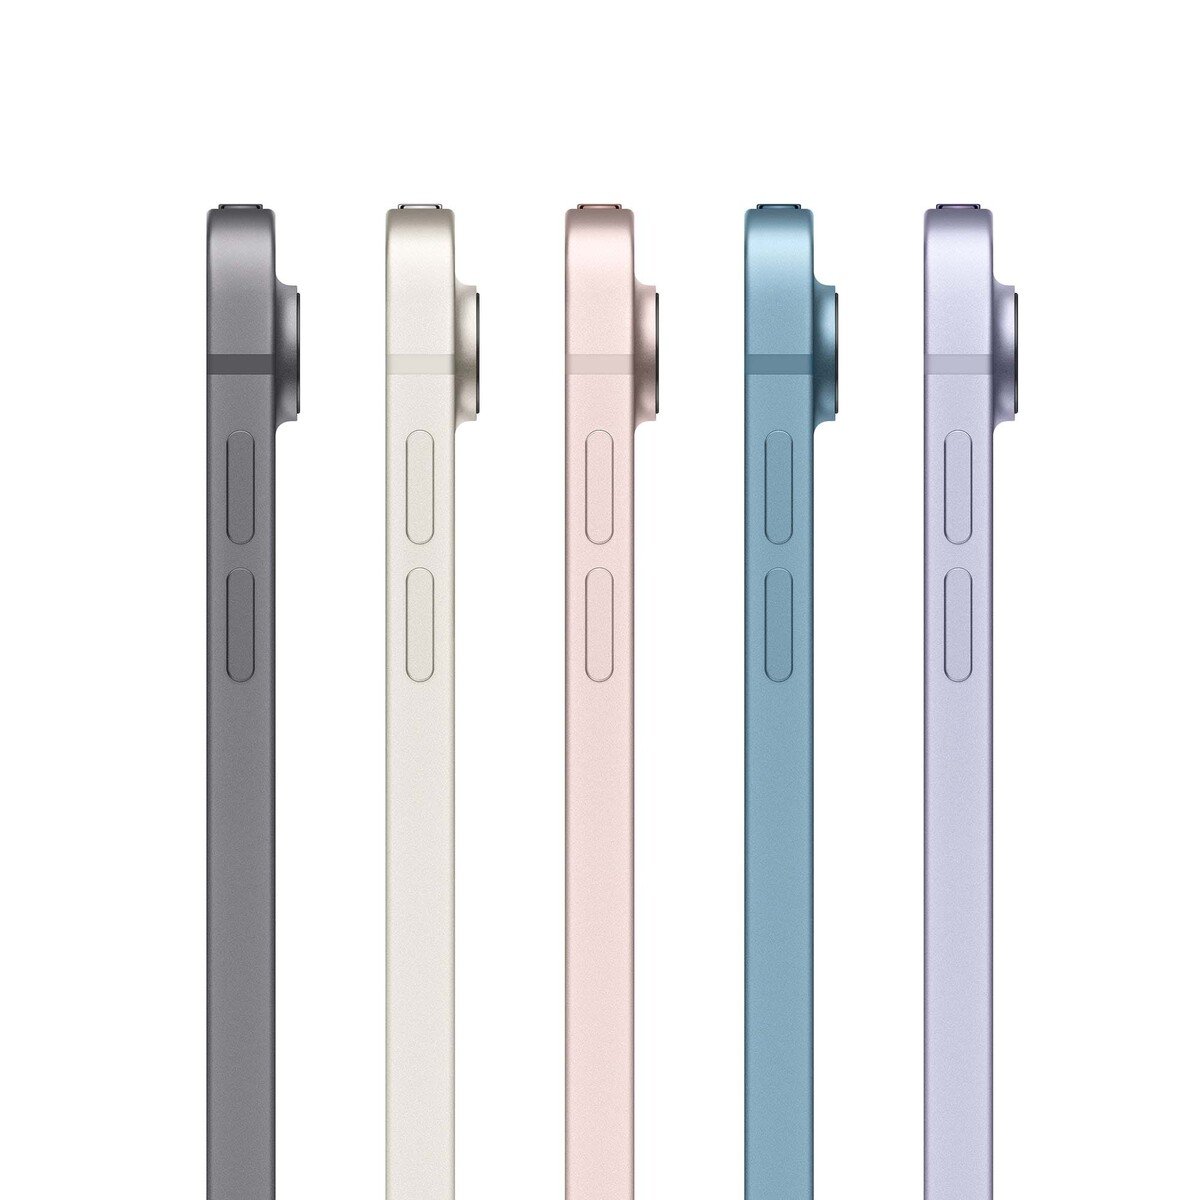 Apple iPad Air (2022) 10.9-inchch Wi-Fi + Cellular(5G) 256GB Pink